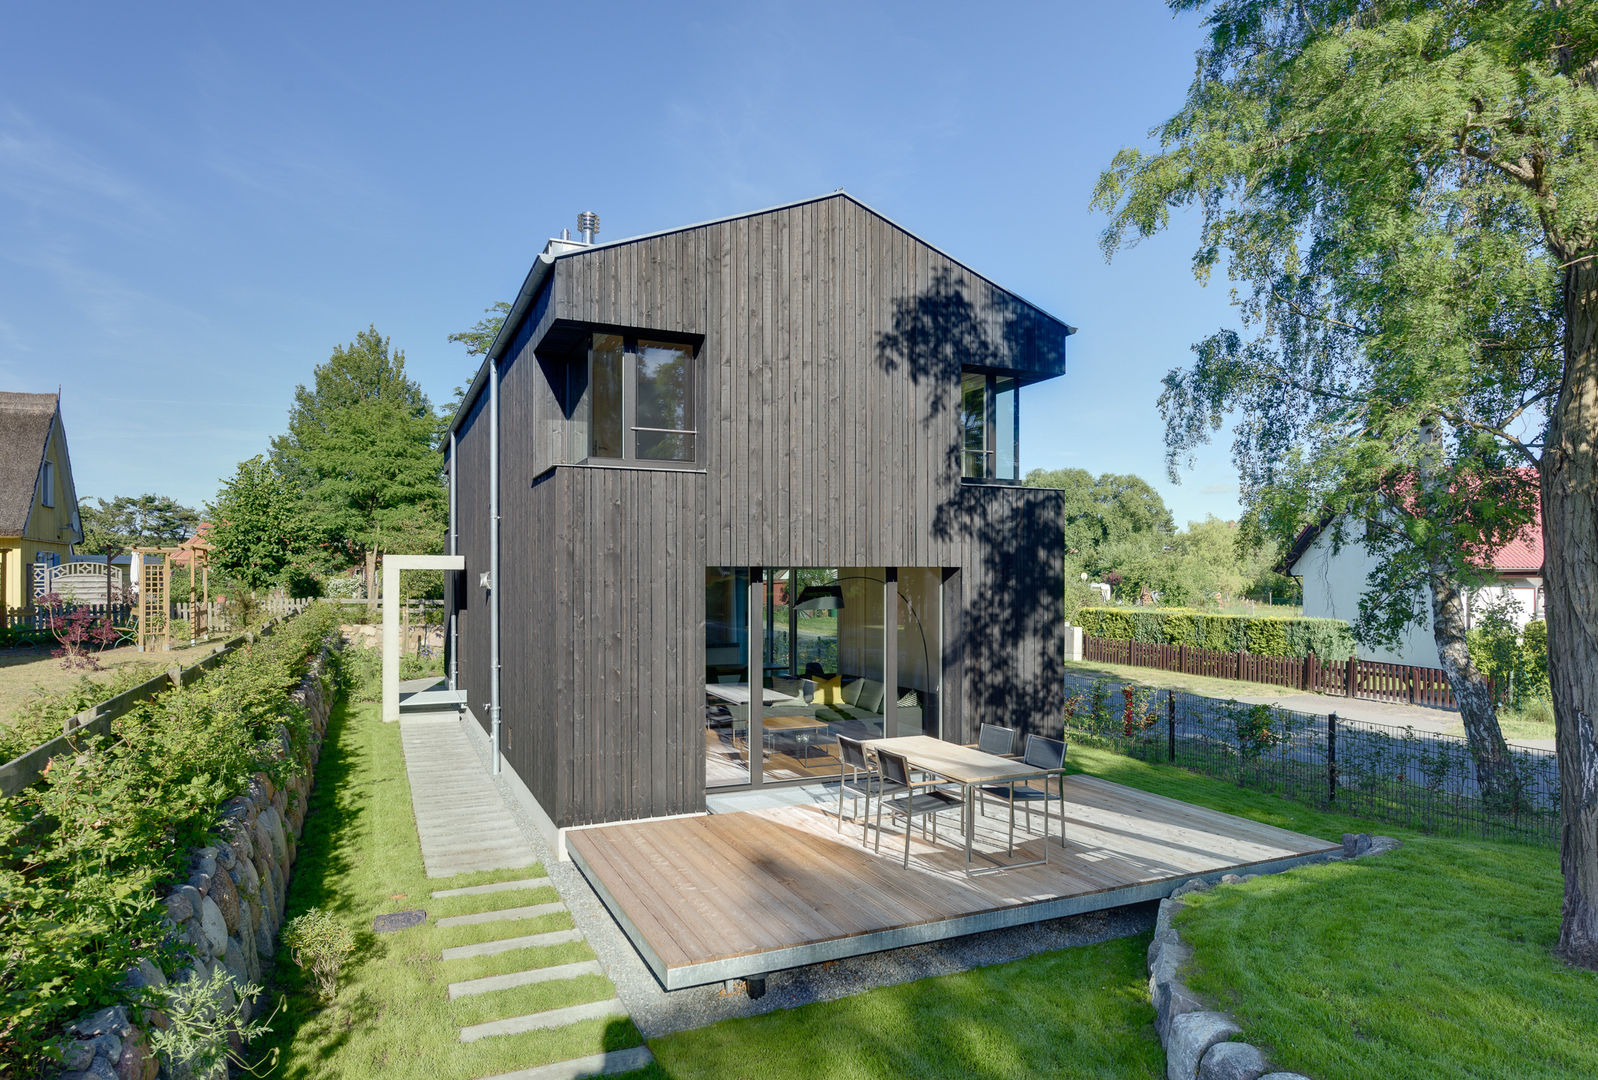 Modernes Ferienwohnhaus in Anlehnung an ein traditionelles Drempelhaus, Möhring Architekten Möhring Architekten Telhados de duas águas